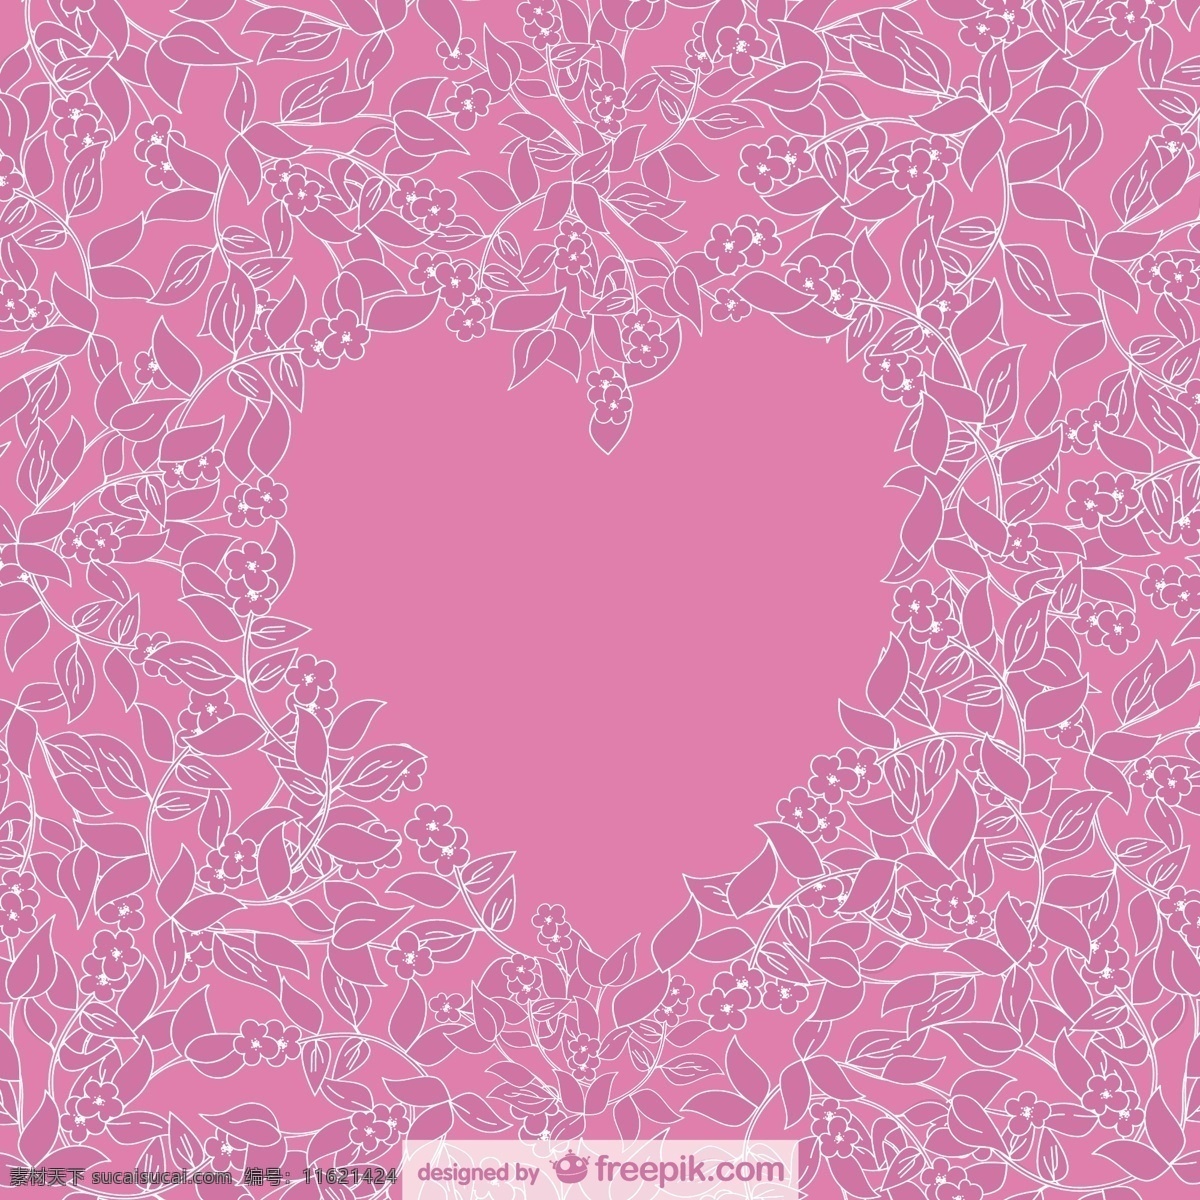 粉红色 花 背景 周围 心 花卉 心脏 邀请 卡片 自然 模板 花卉背景 壁纸 图形 布局 平面设计 制图 粉色